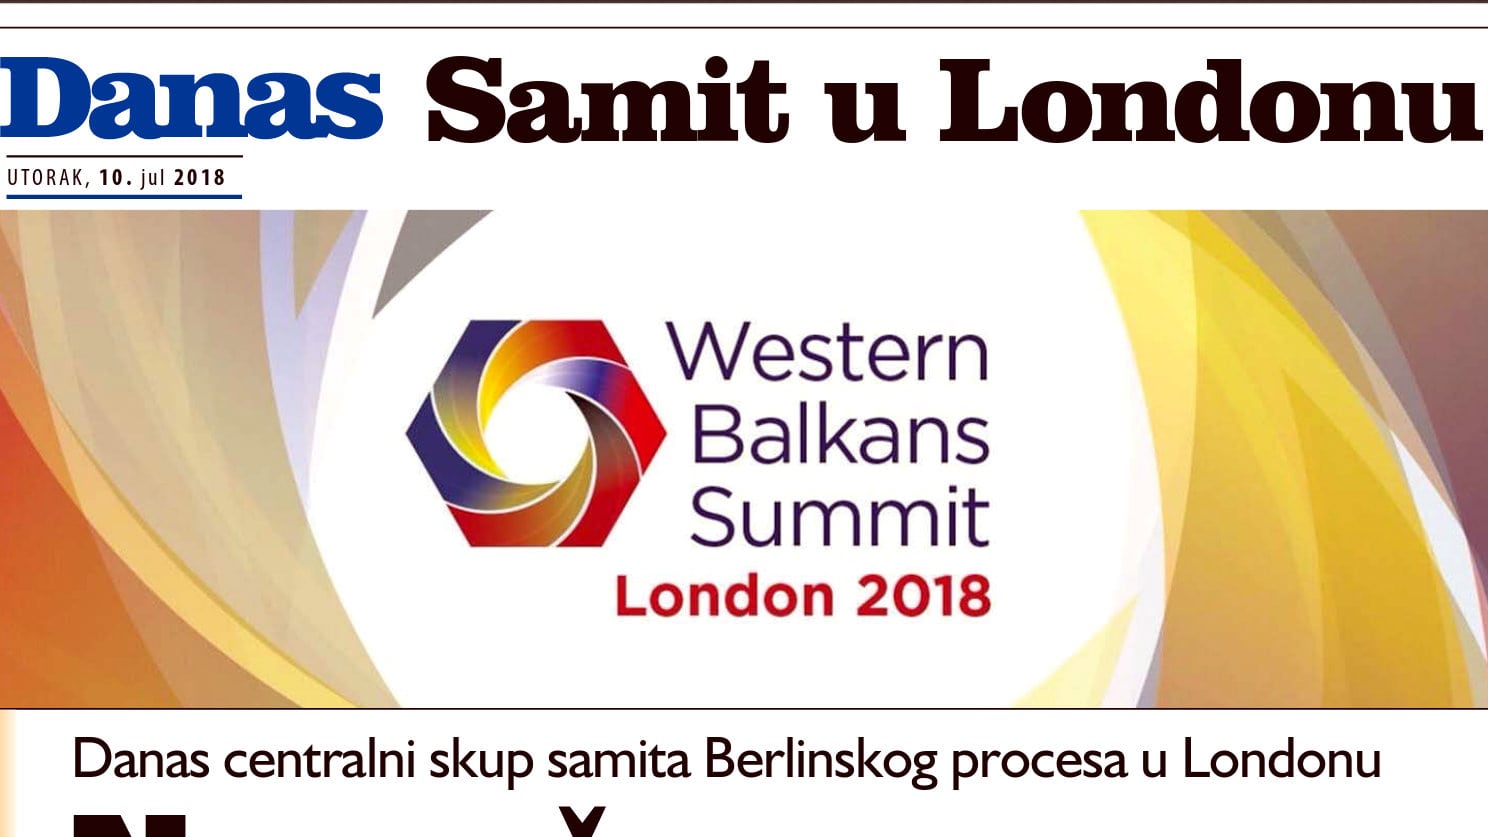 Danas - Samit u Londonu (PDF) 1